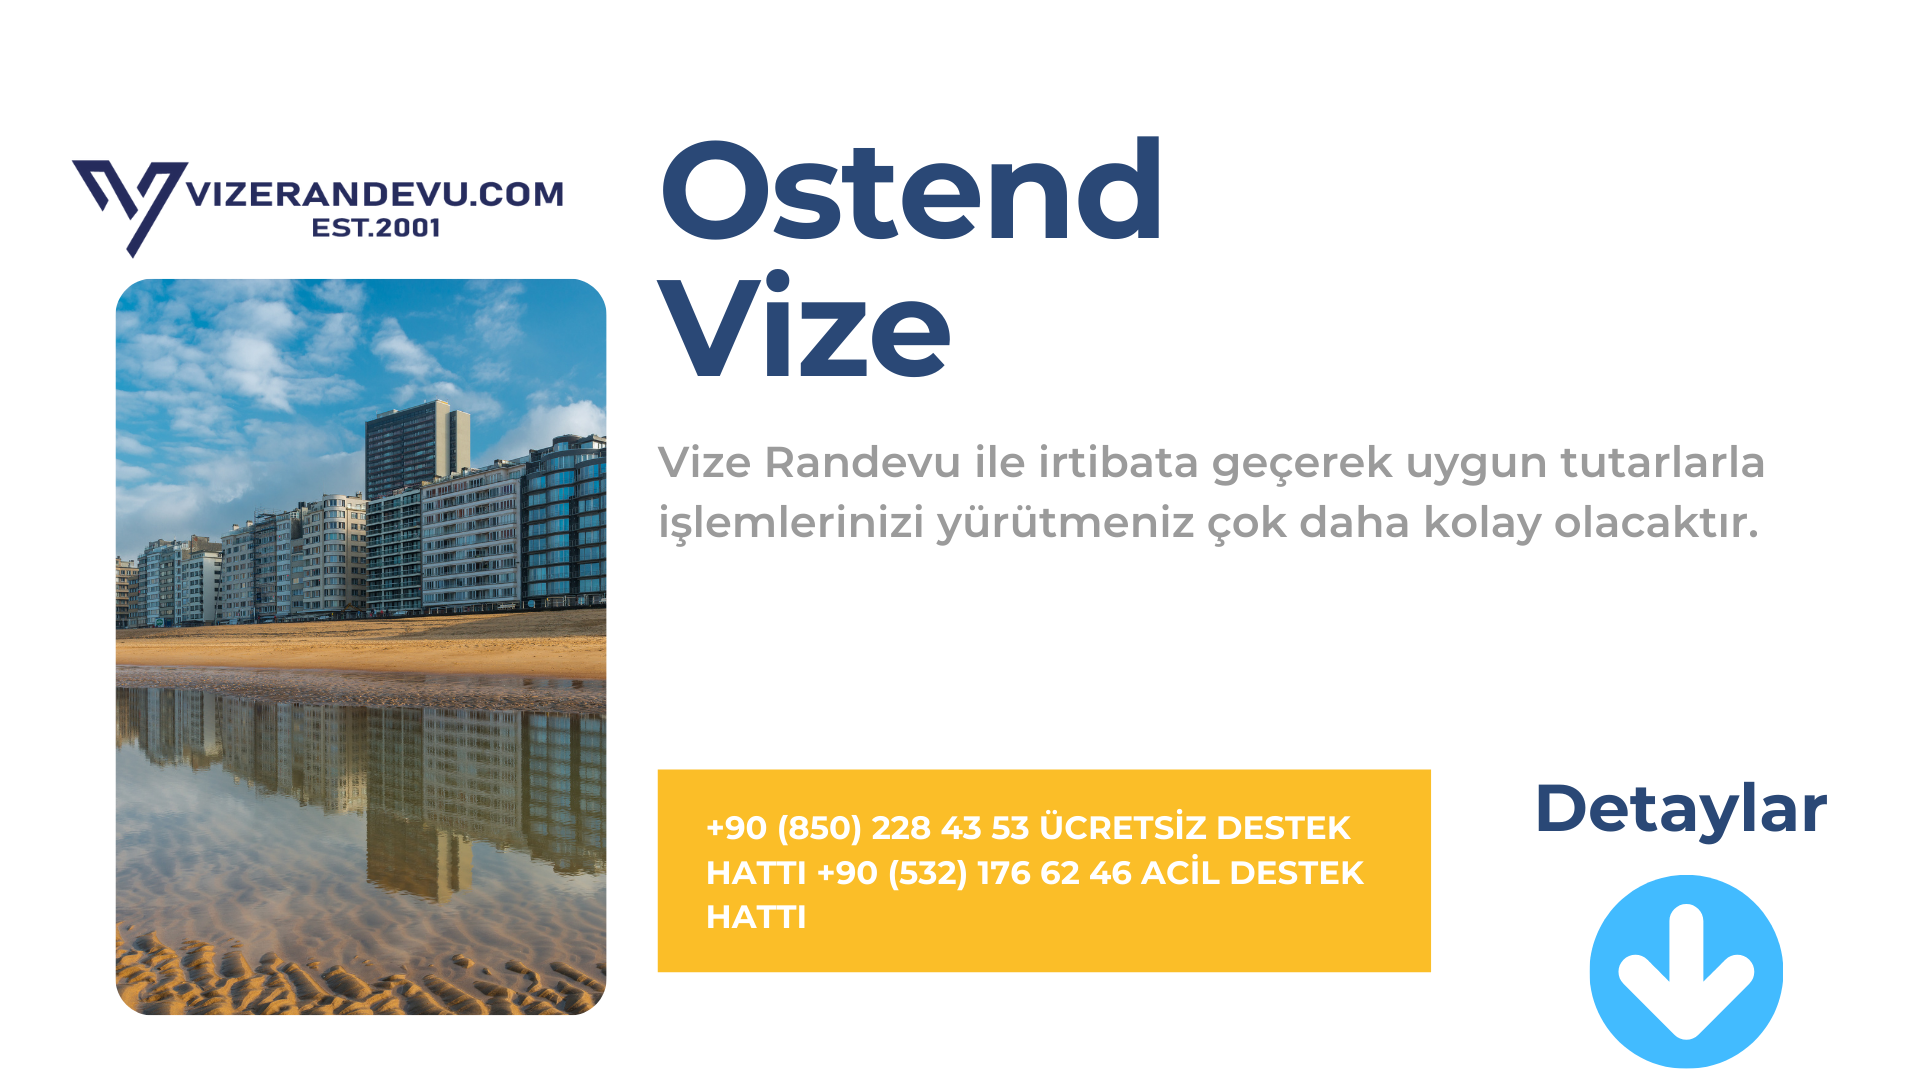 Ostend Vize